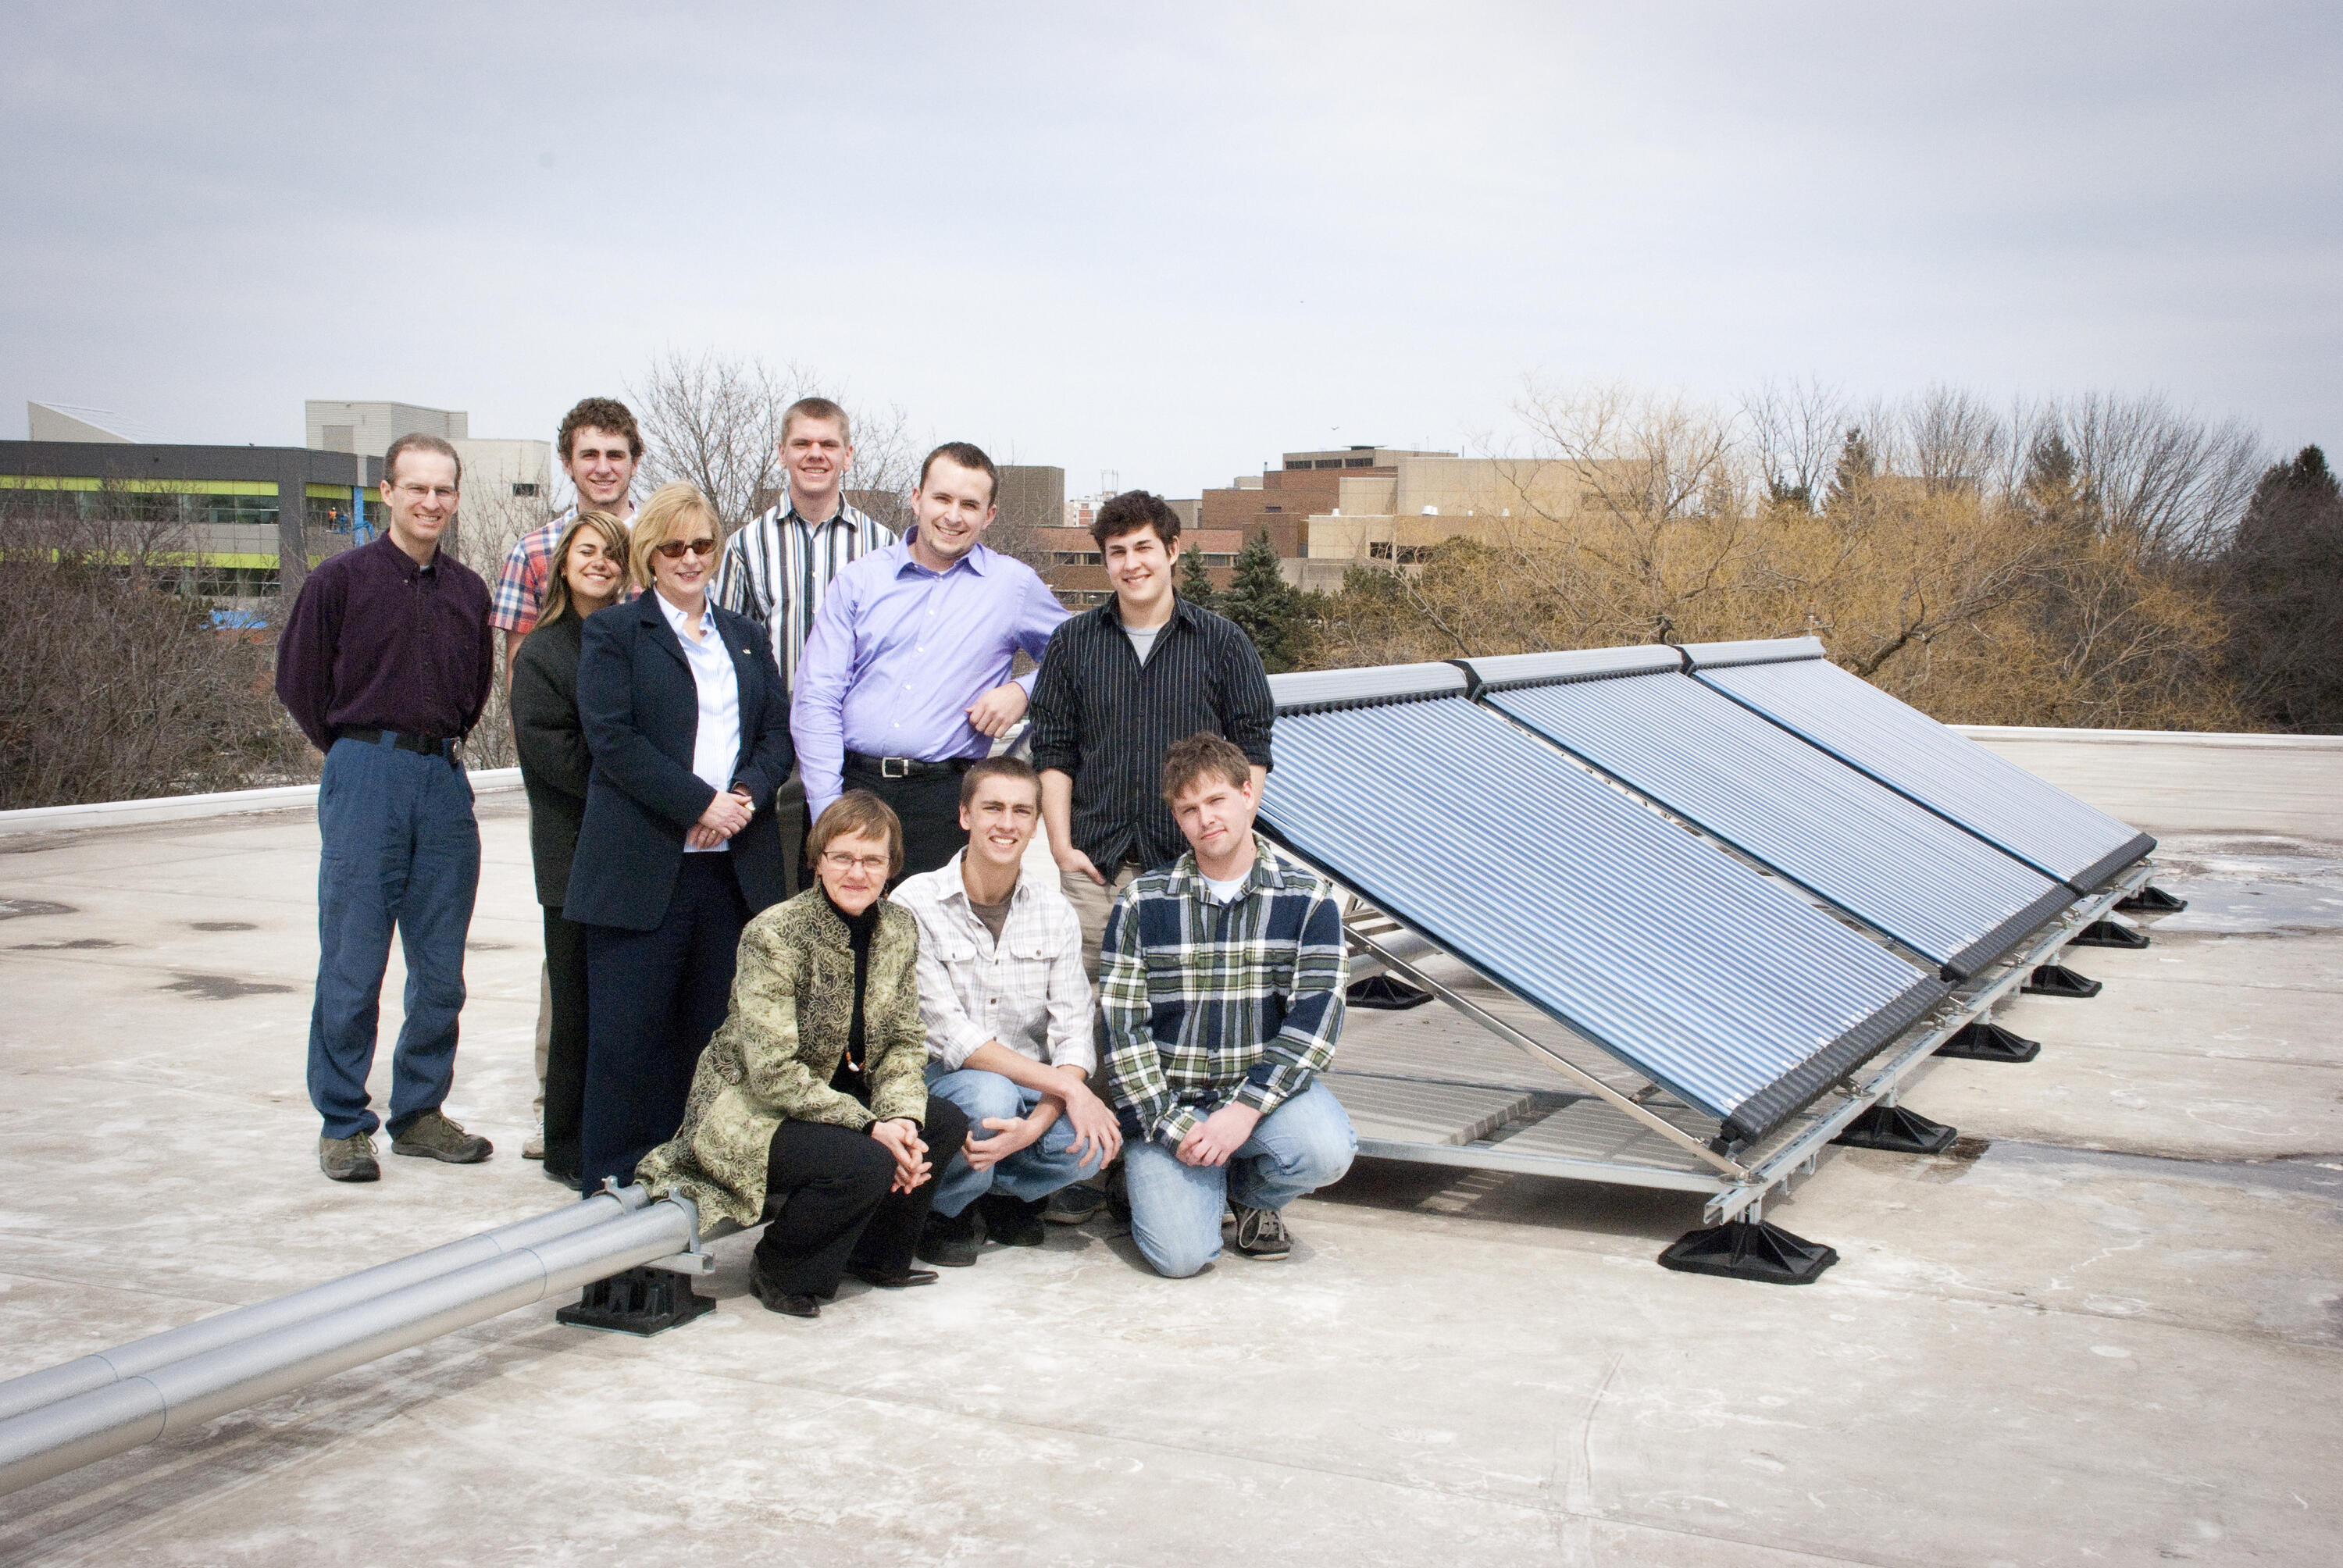 Solar grebel team beside solar panels on grebel roof